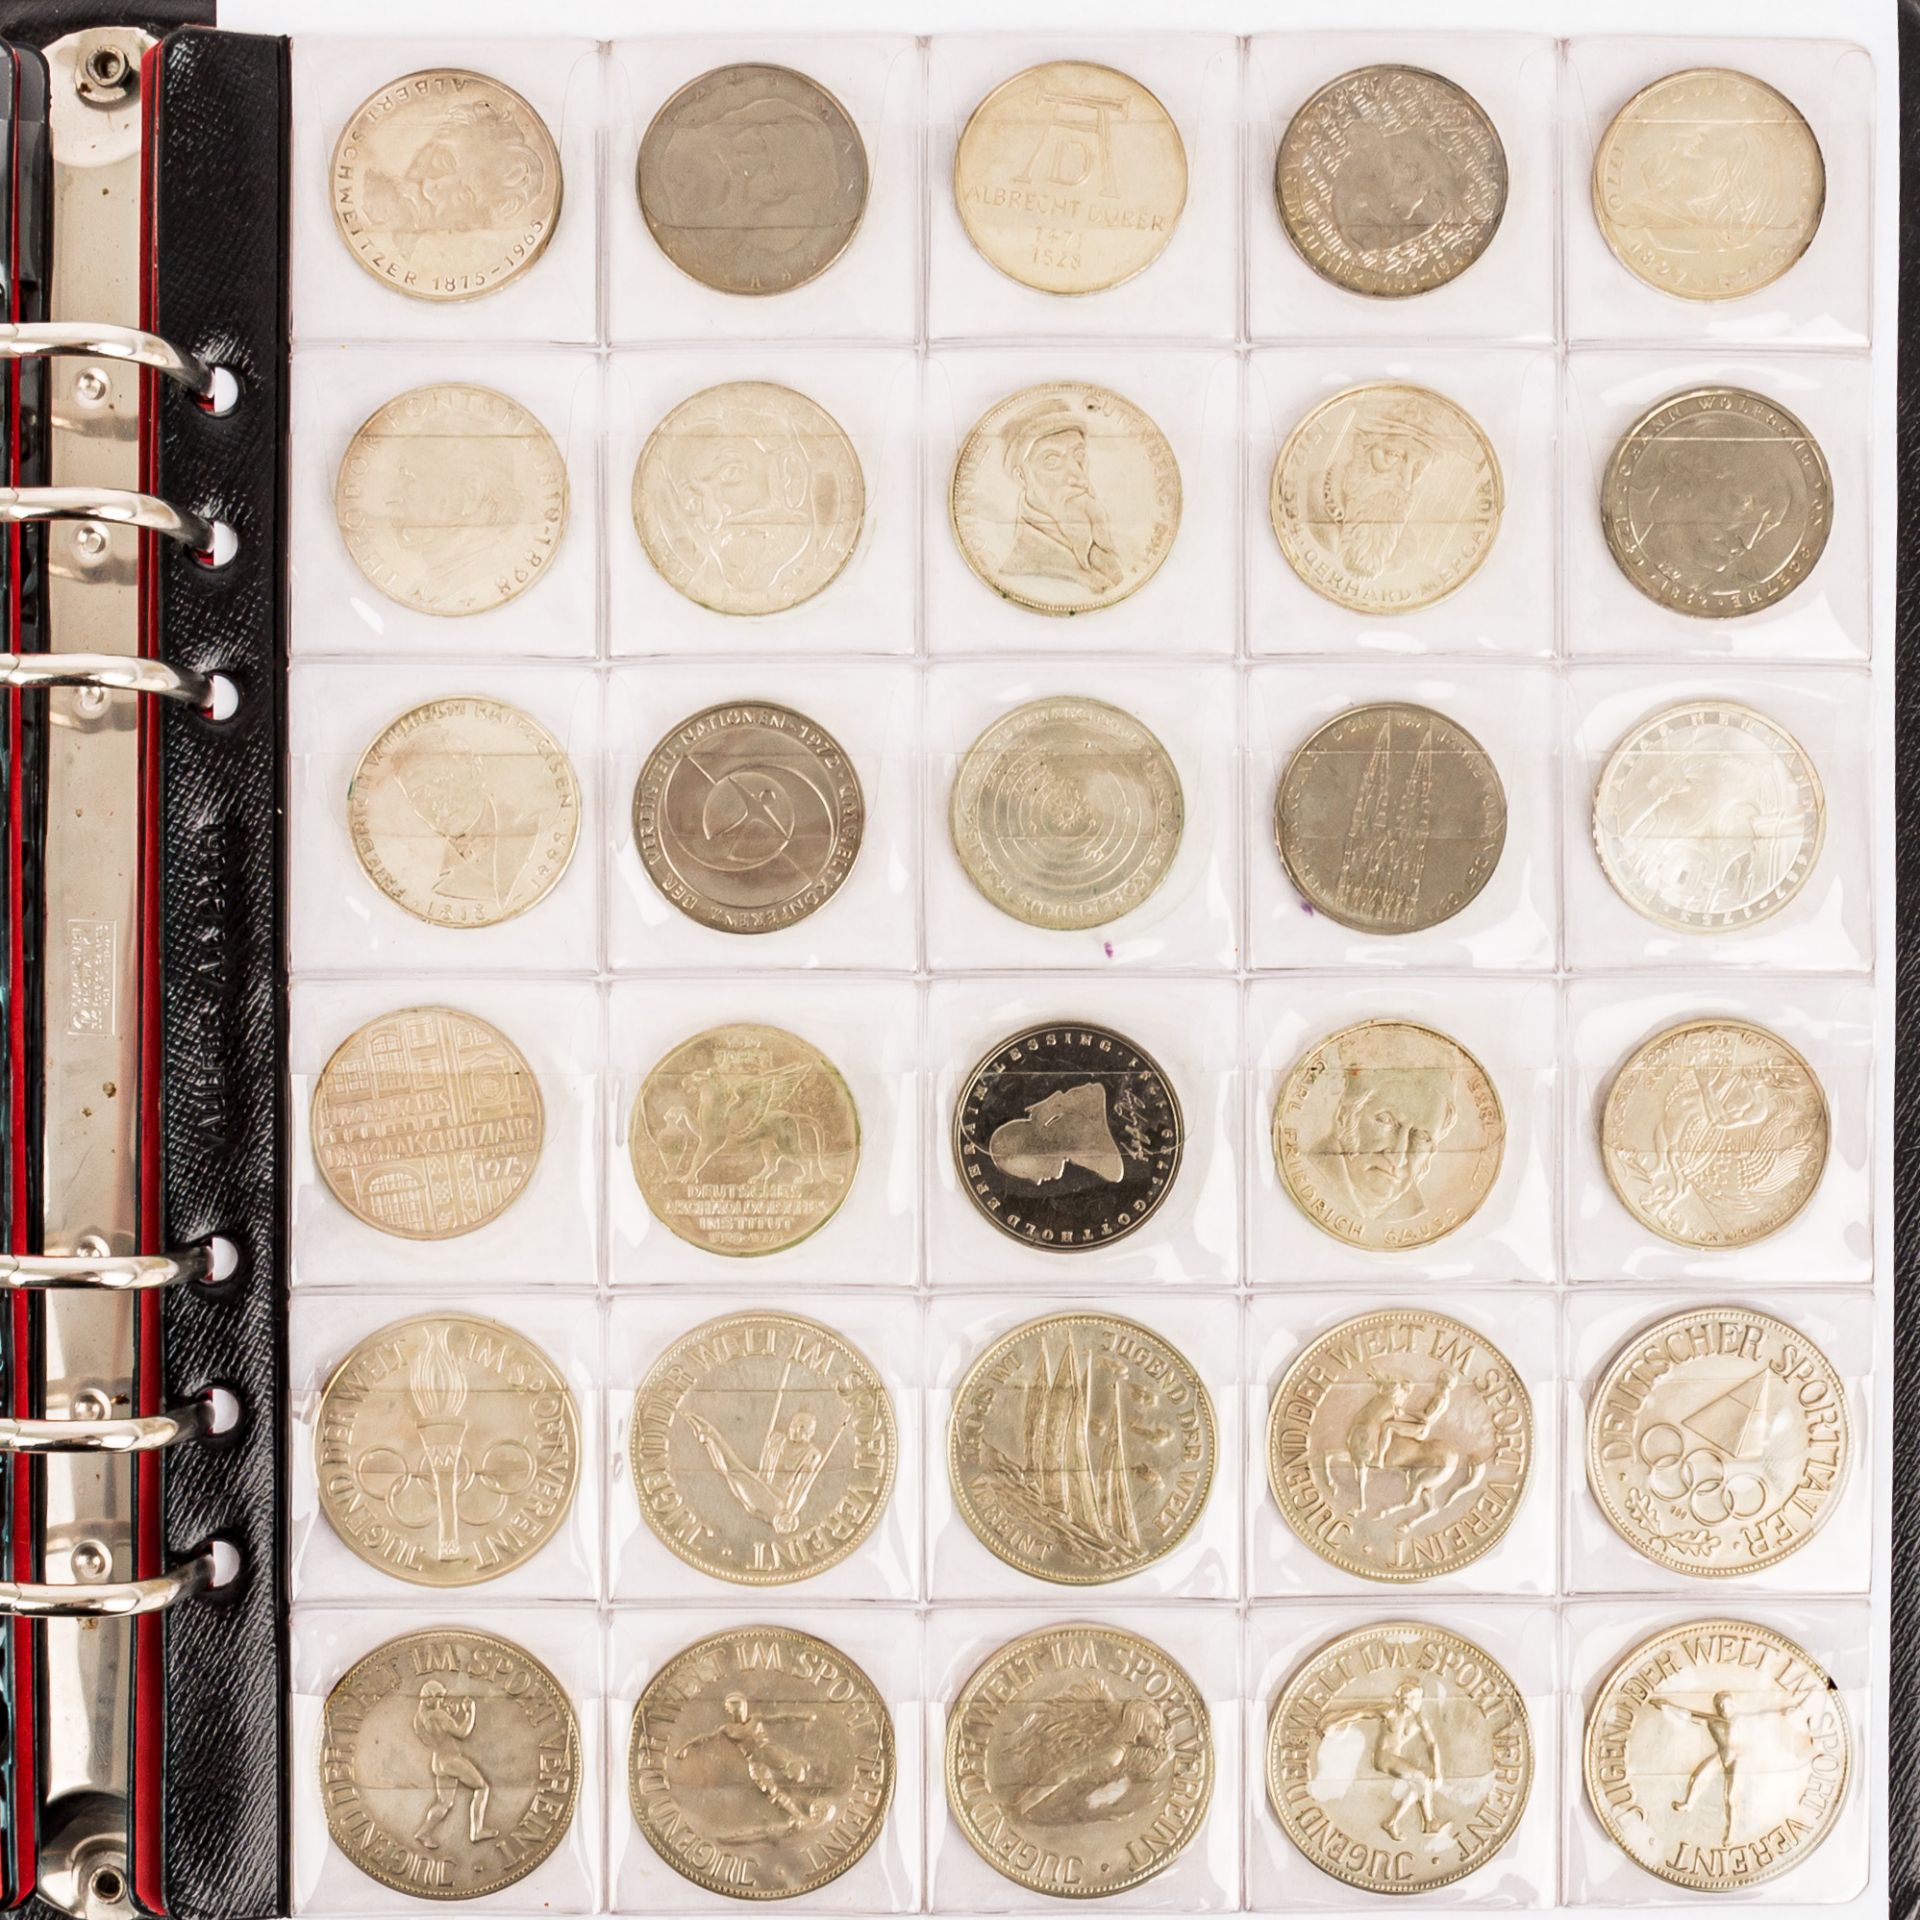 Münzen und Medaillen, BRD Gedenkmünzen,Österreich Schillinge, Medaillen 40 Jahre BRD fast nahezu 500 - Bild 3 aus 12